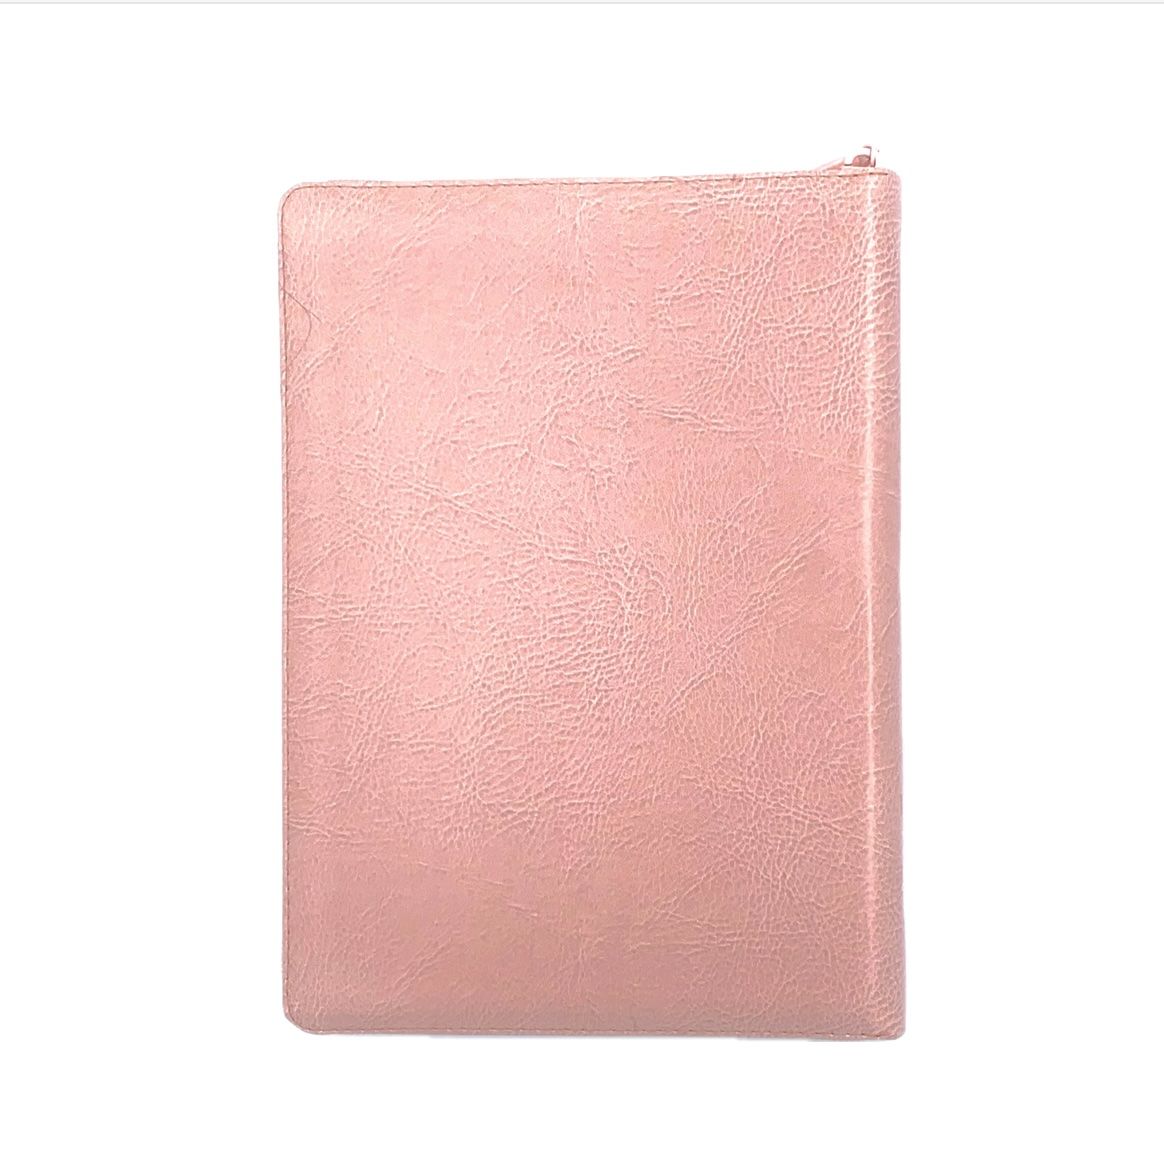 Библия 076zti код 23076-35в, дизайн термо штамп "сердце", переплет из искусственной кожи на молнии с индексами, цвет розовый, размер 180x243 мм